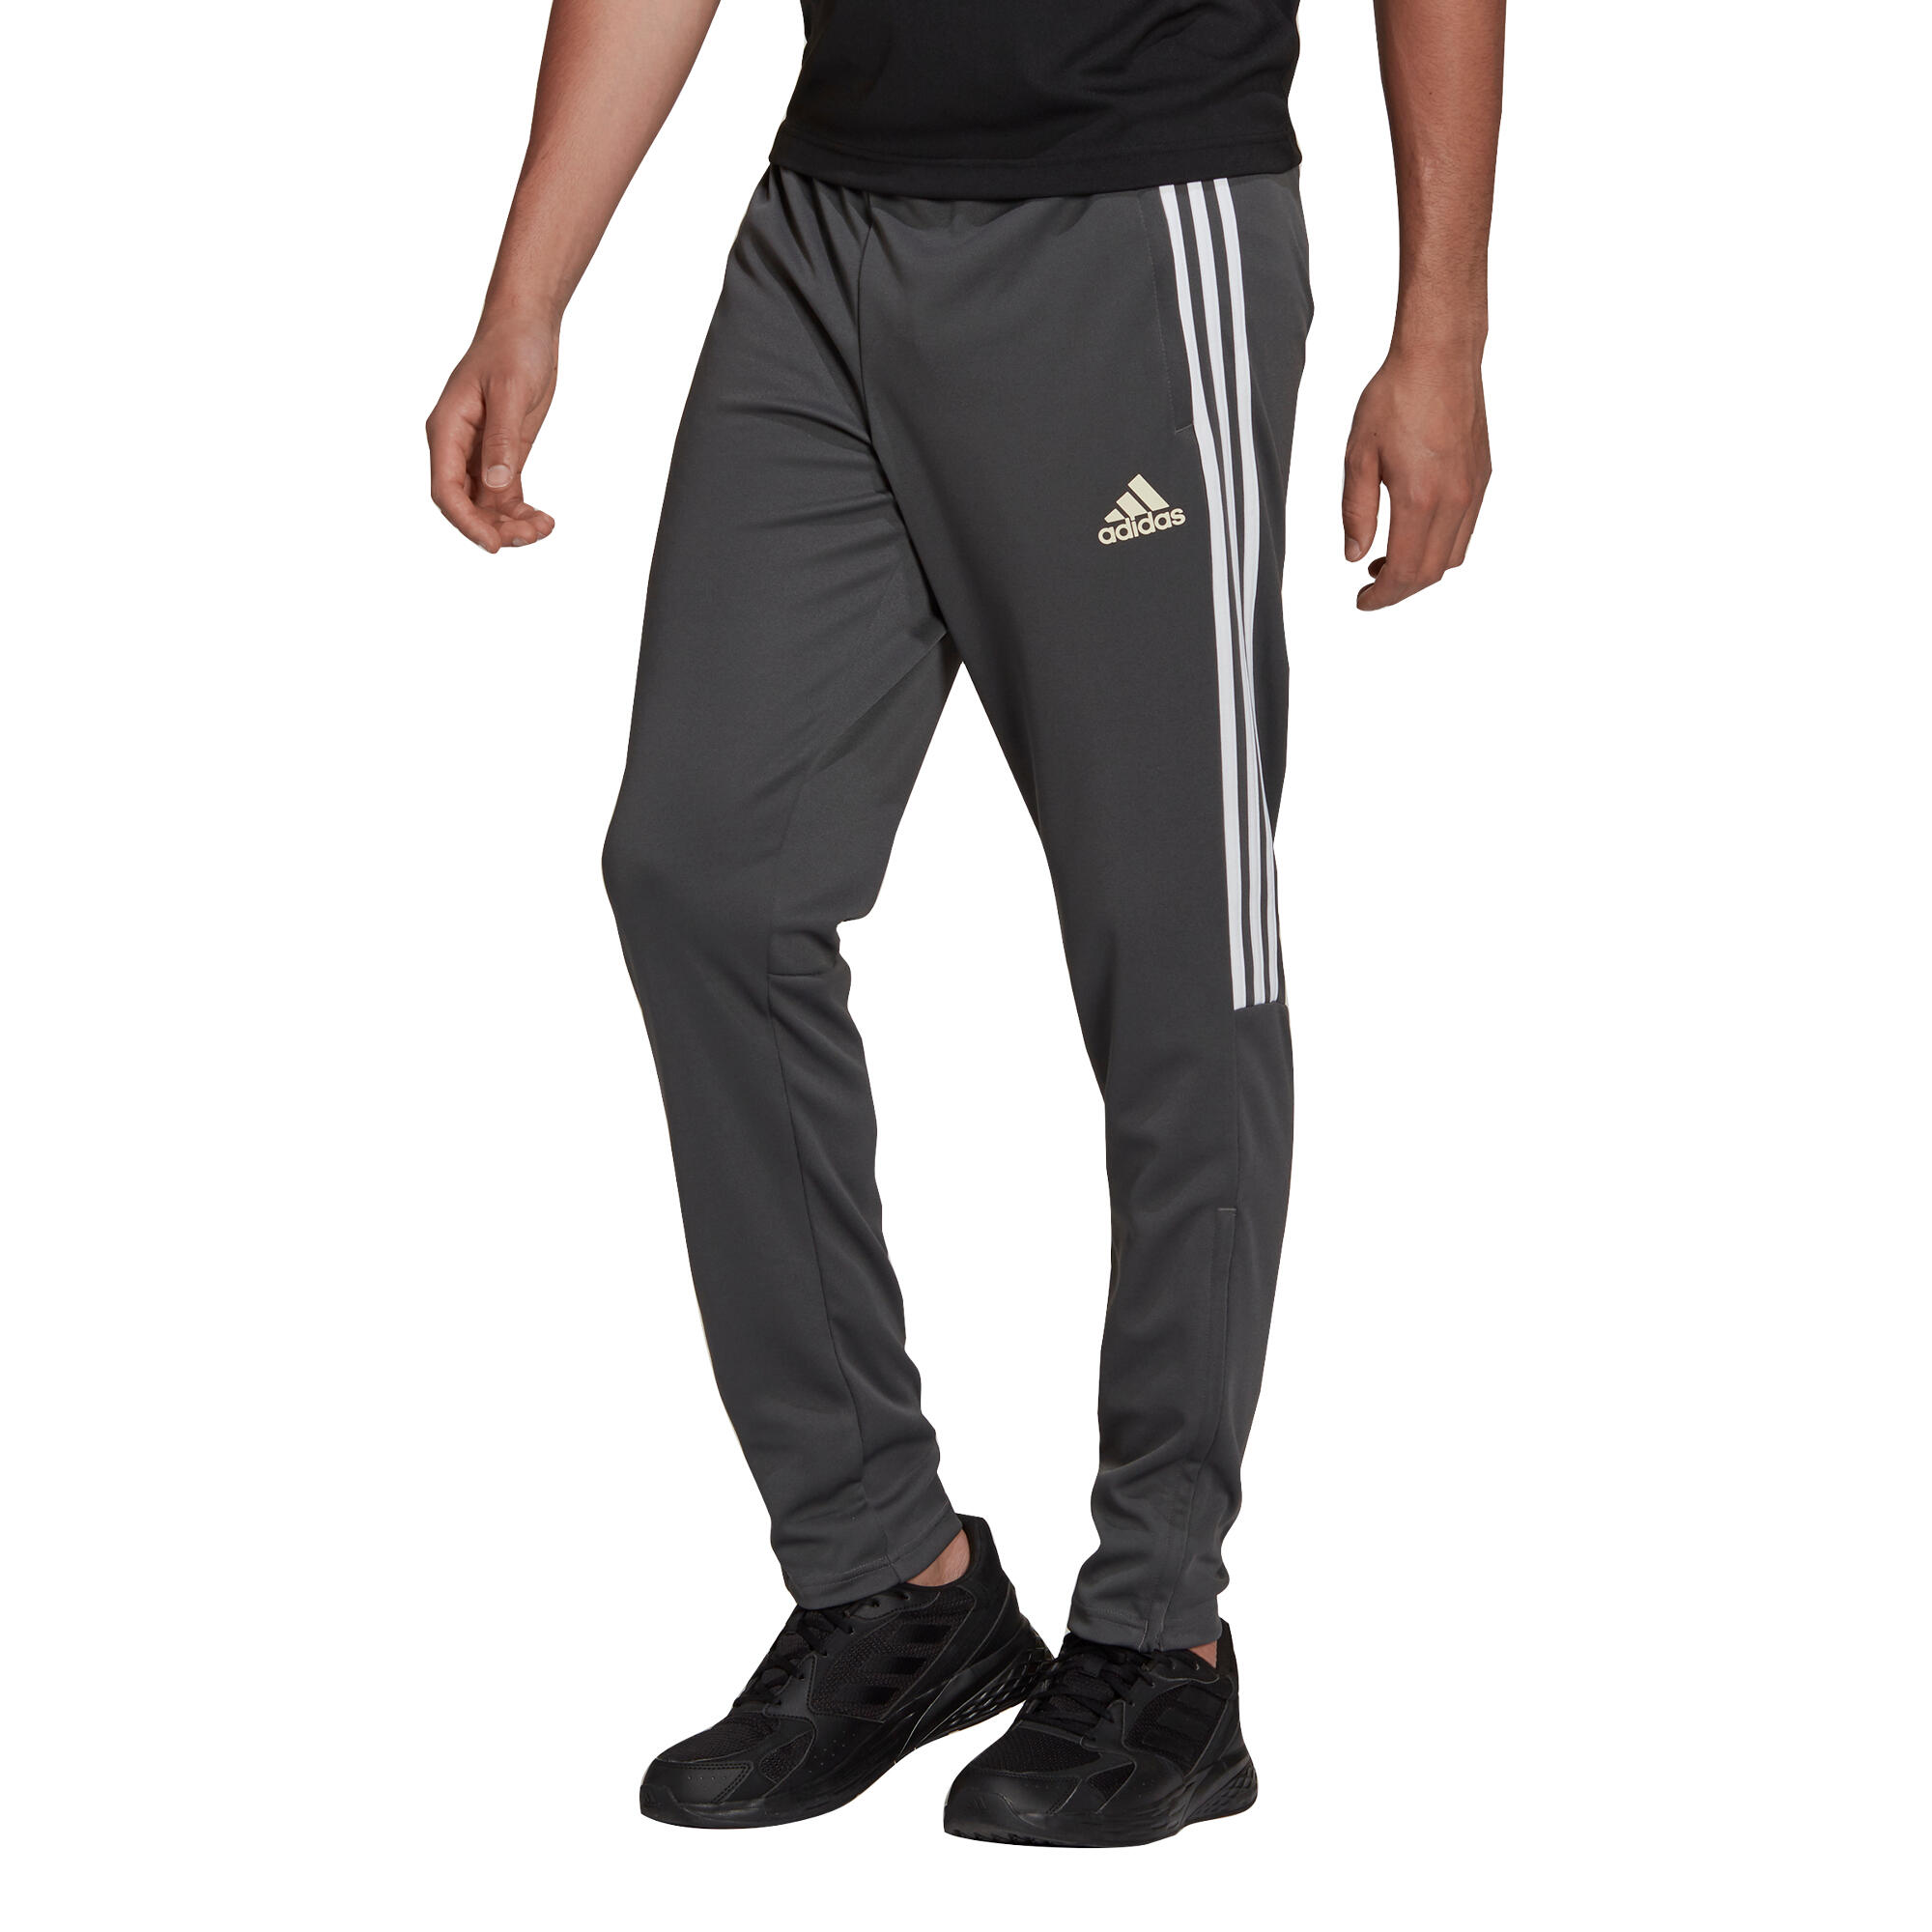 Pantalon fitness cardio cu logo bărbați ADIDAS adidas